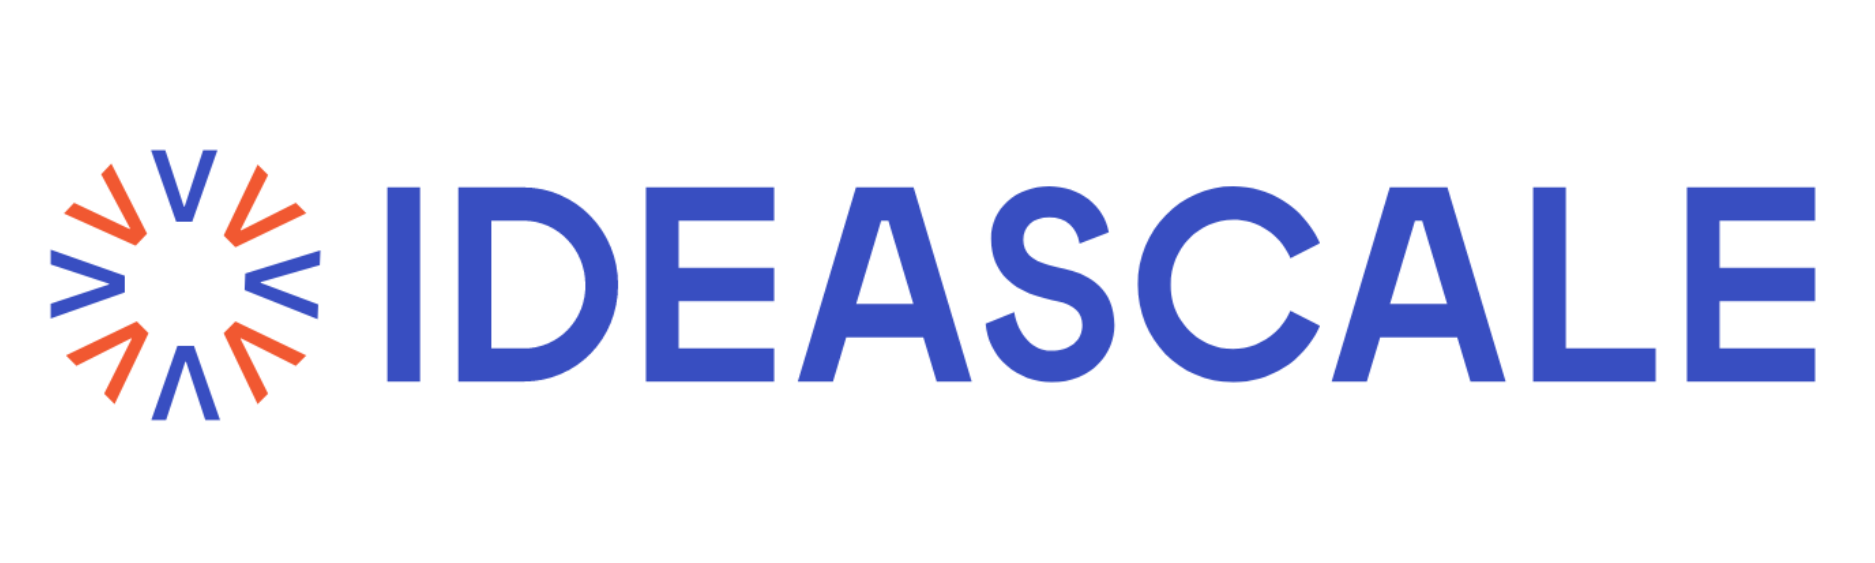 IdeaScale-Transparent.Logo.png